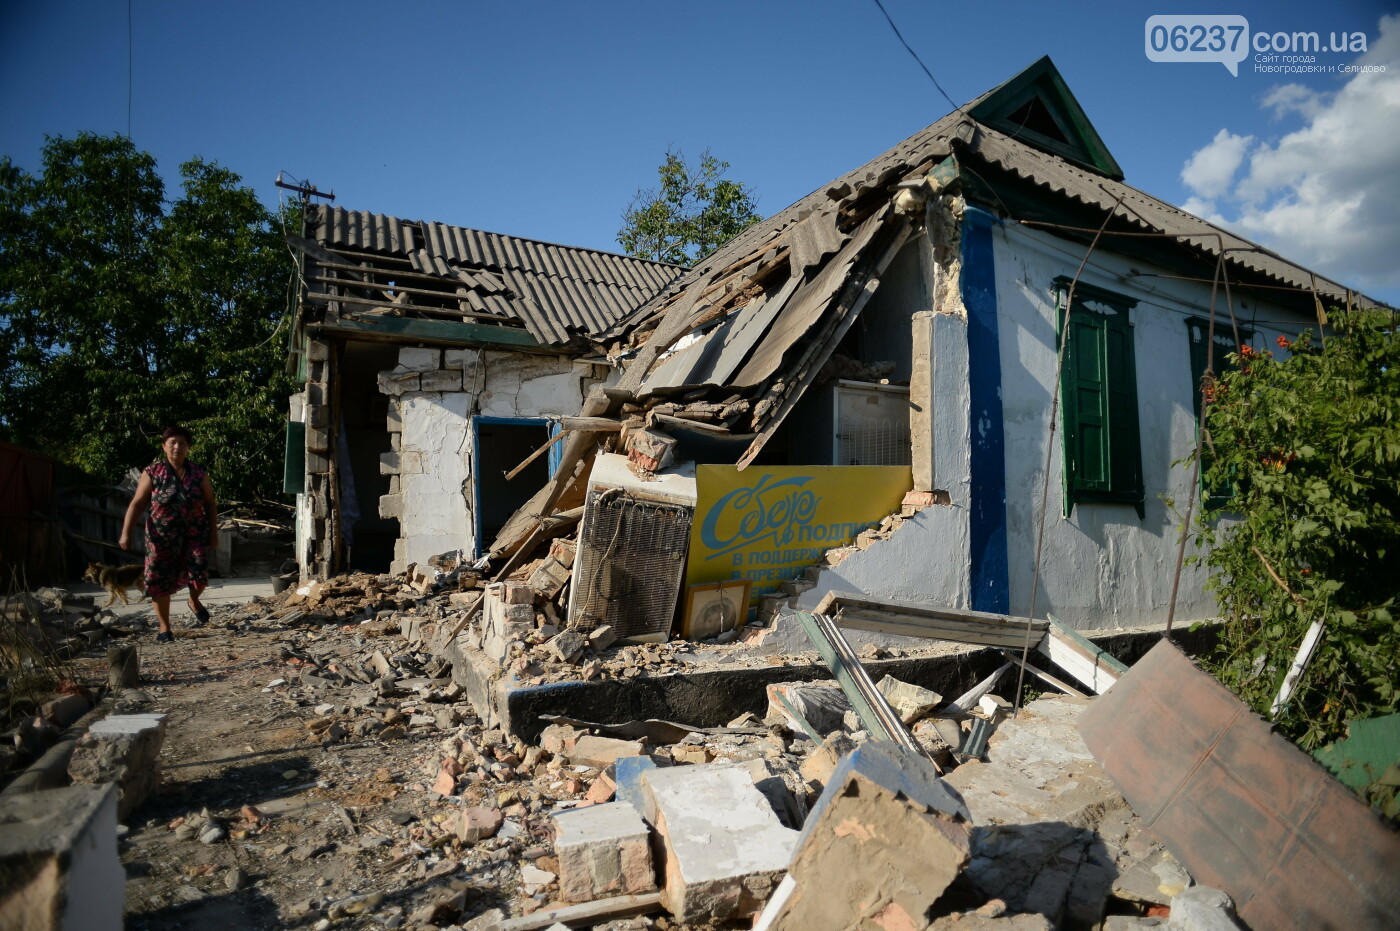 В Донецкой области начали восстановление прифронтового села, фото-1